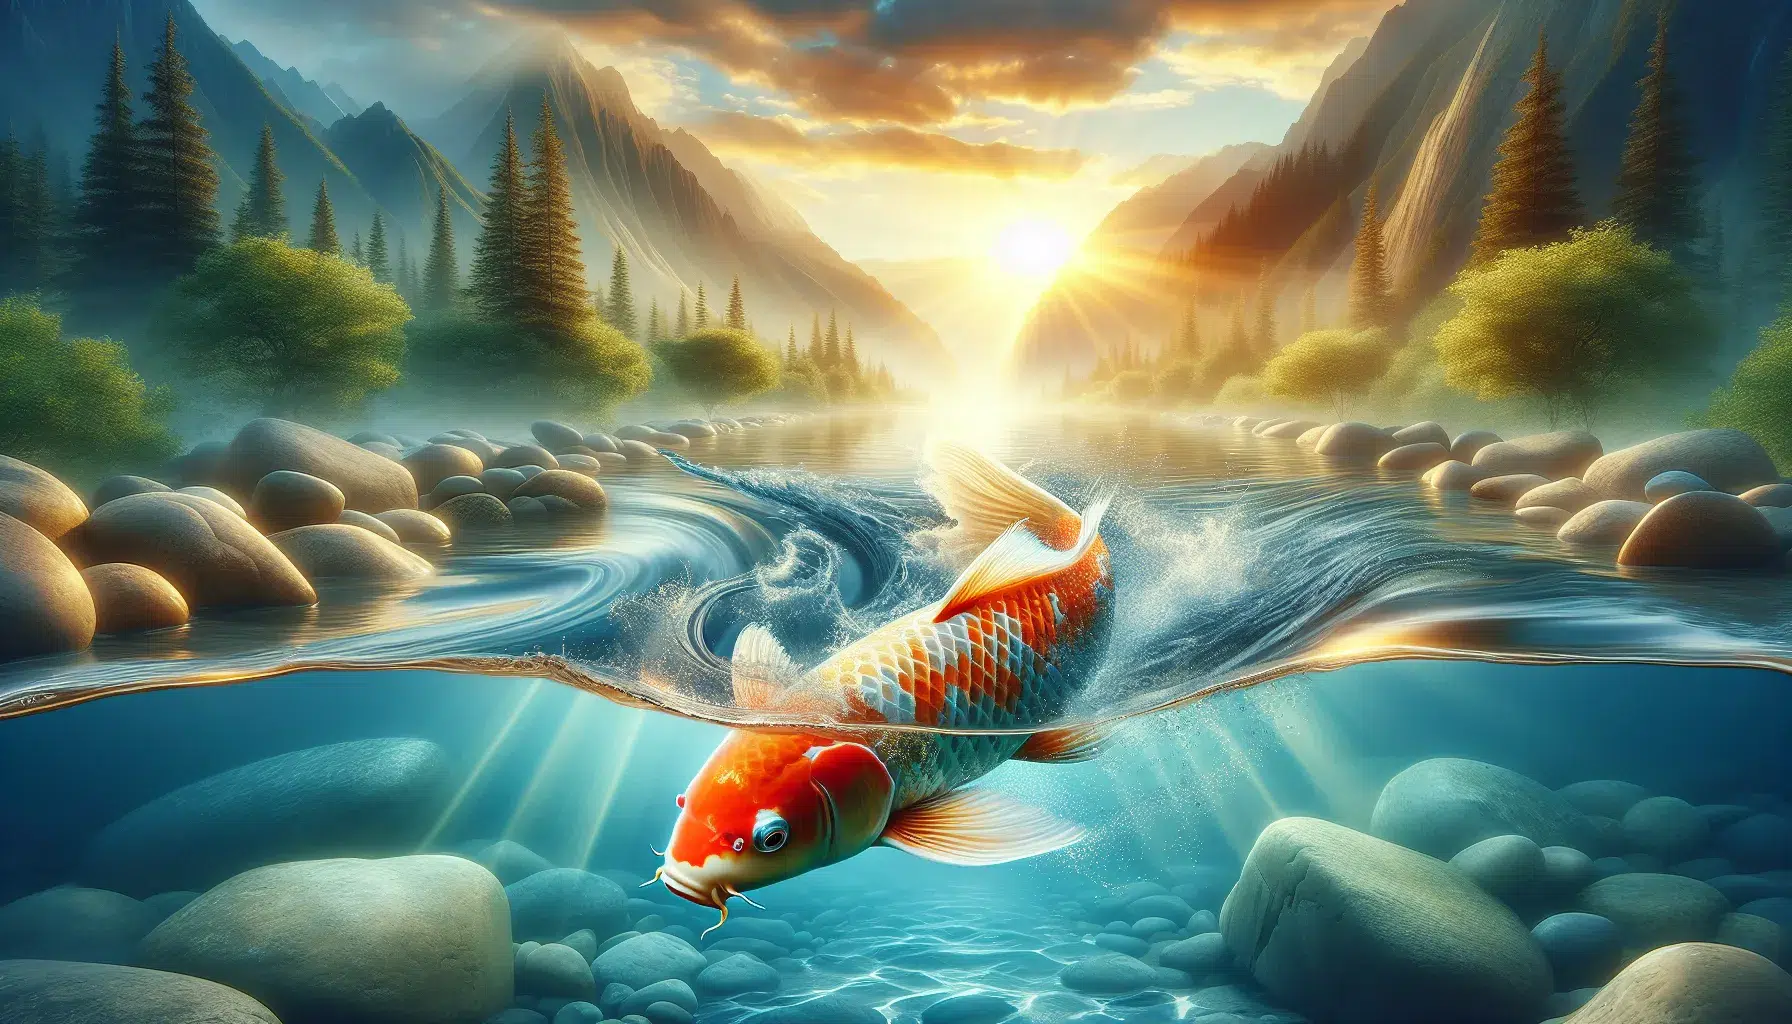 Imagen de un pez Koi nadando en un estanque tranquilo, representando fuerza, perseverancia y transformación en la cultura espiritual.